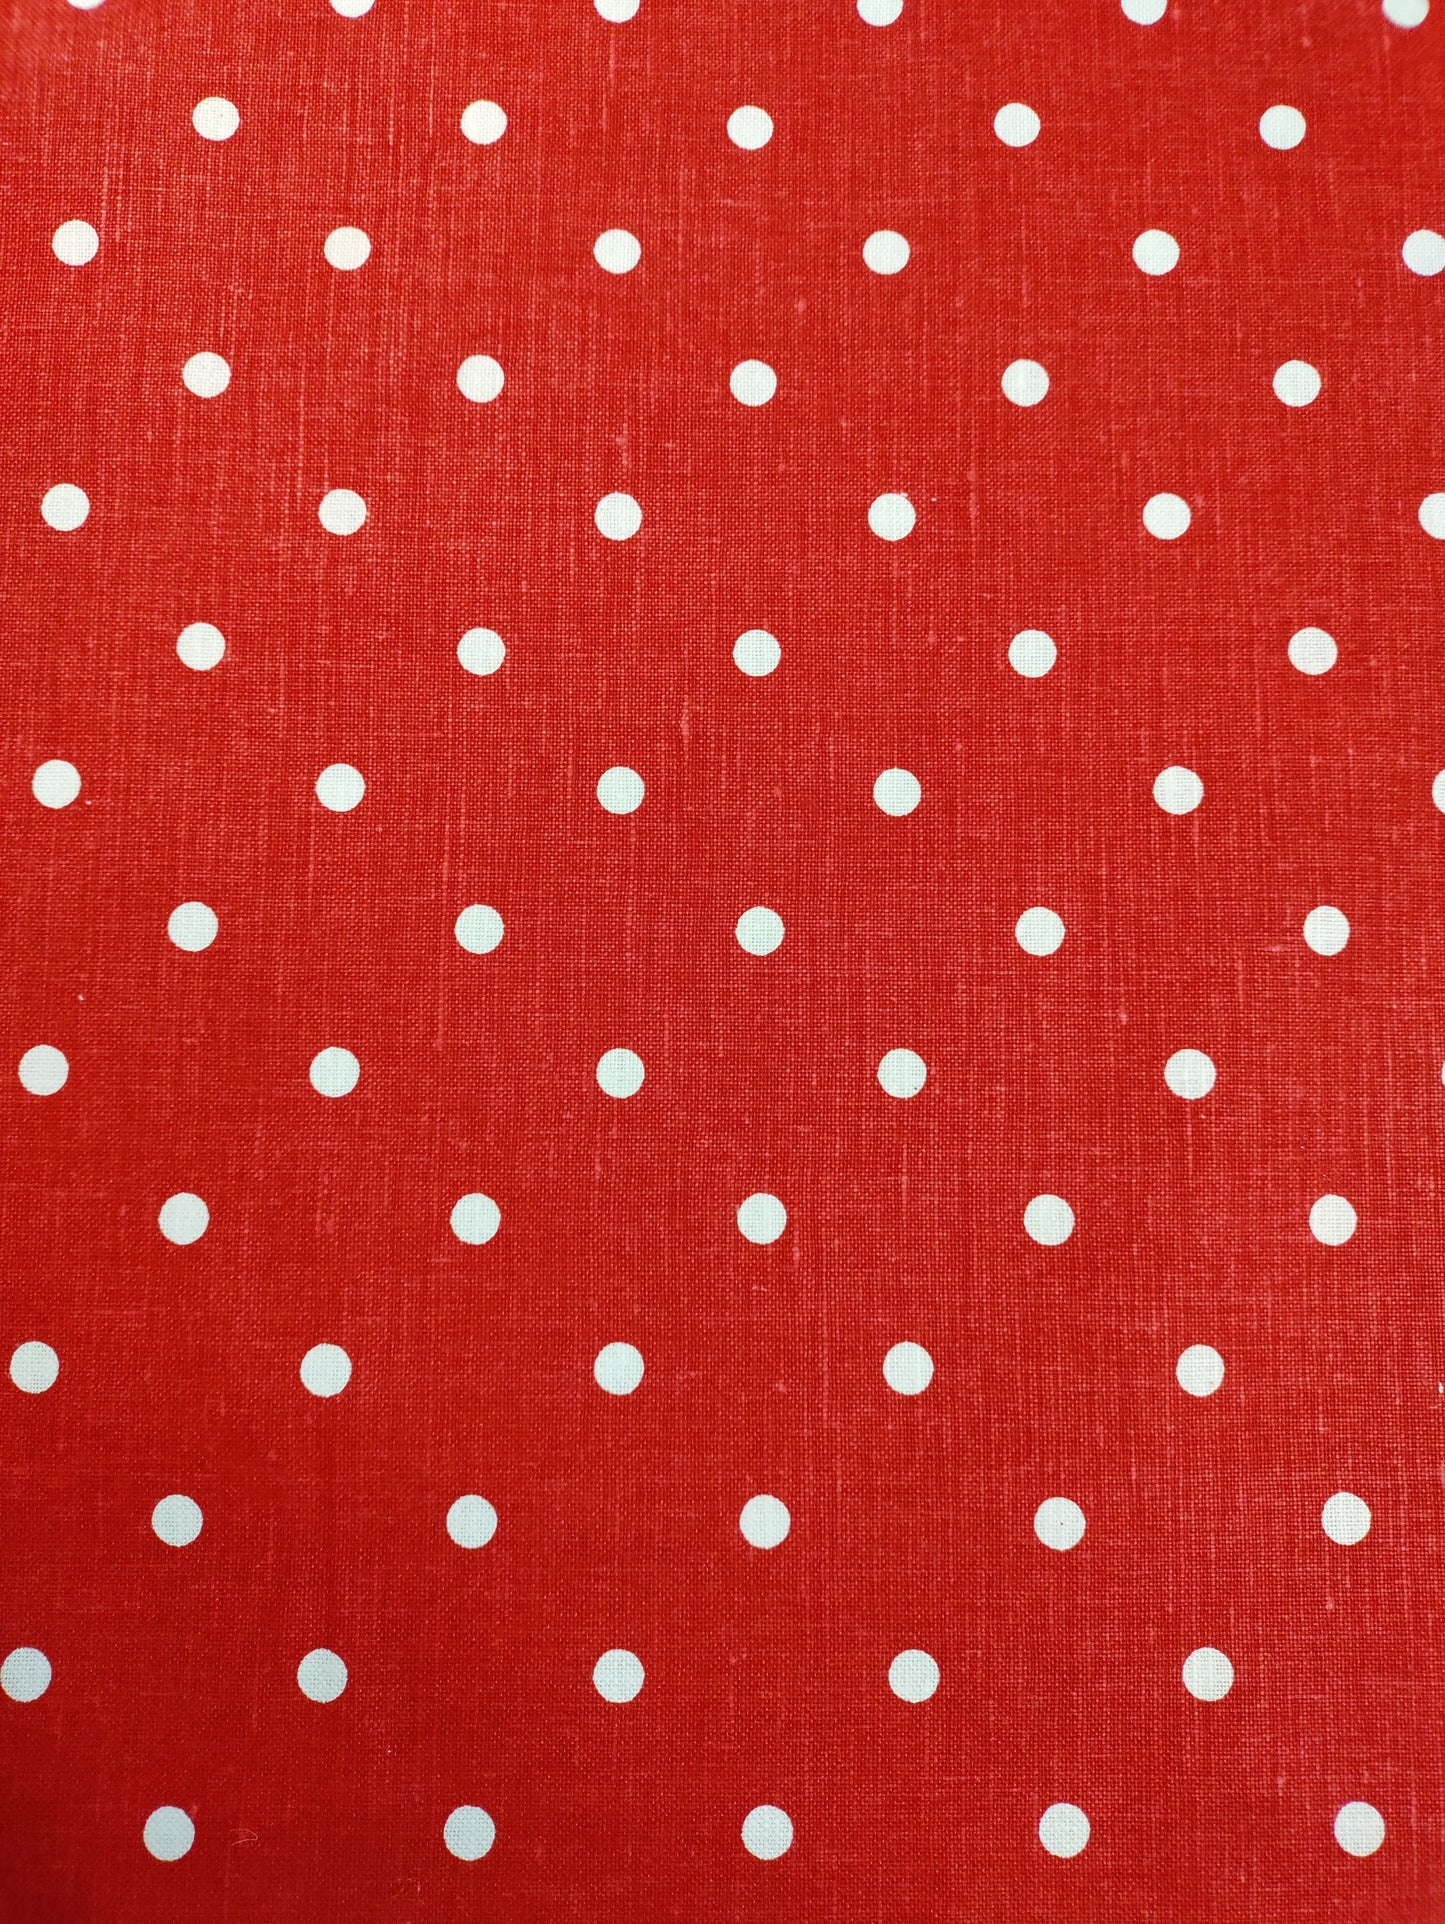 Red & White Polka Dot